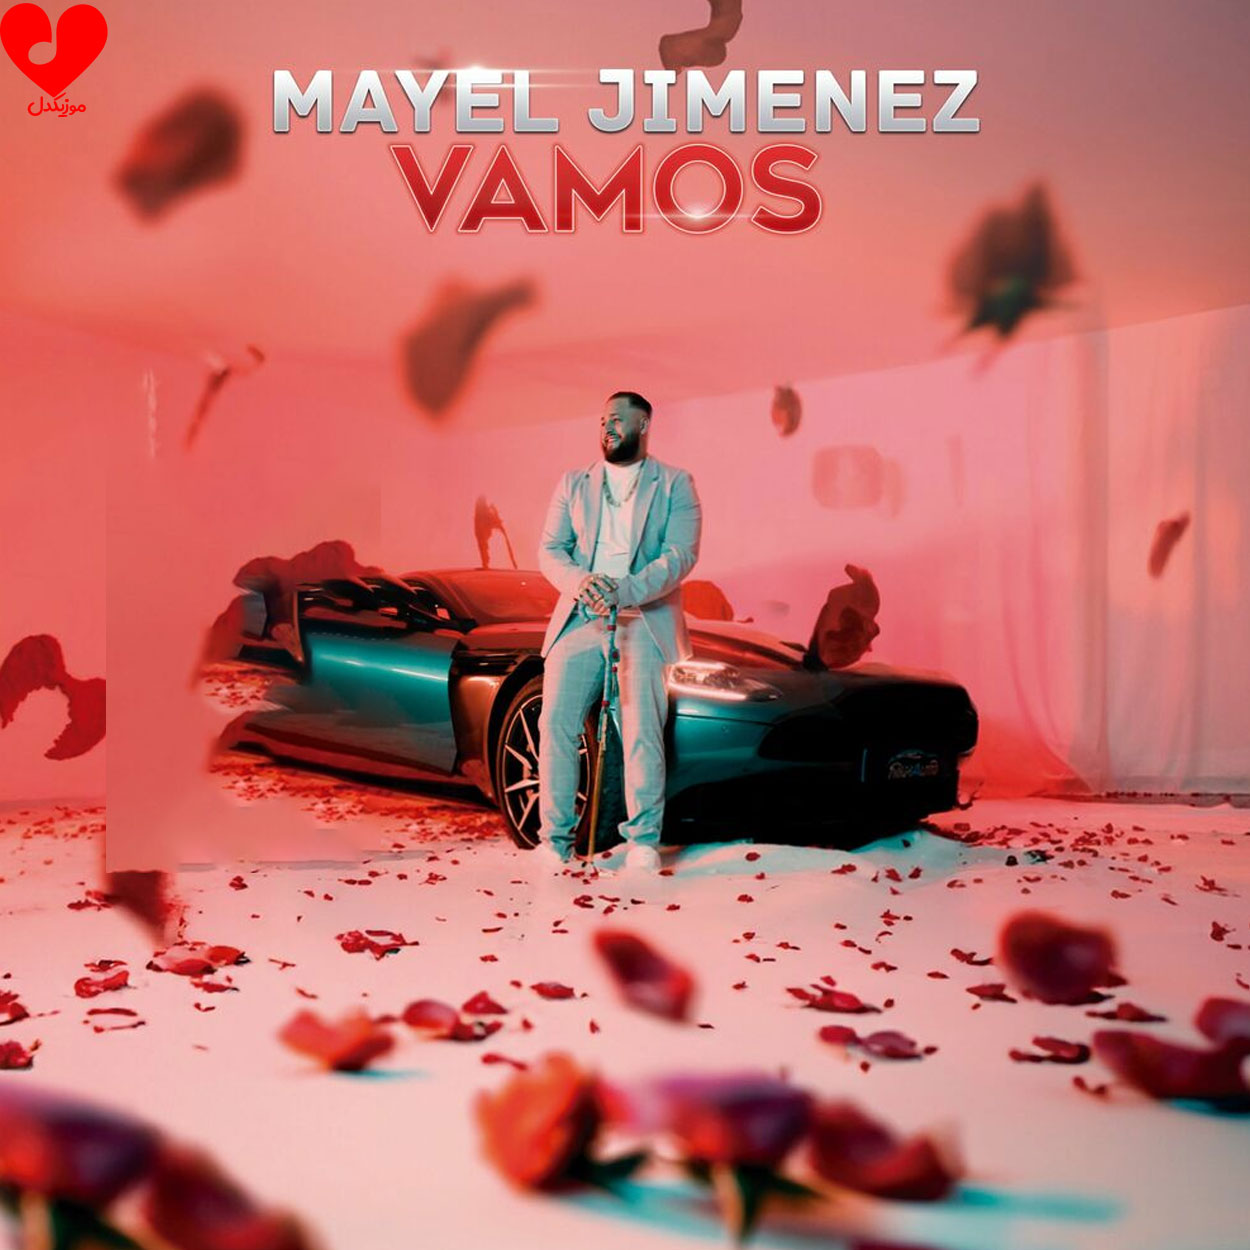 دانلود آهنگ Vamos از Mayel Jimenez با متن (کامل) – آب موزیک